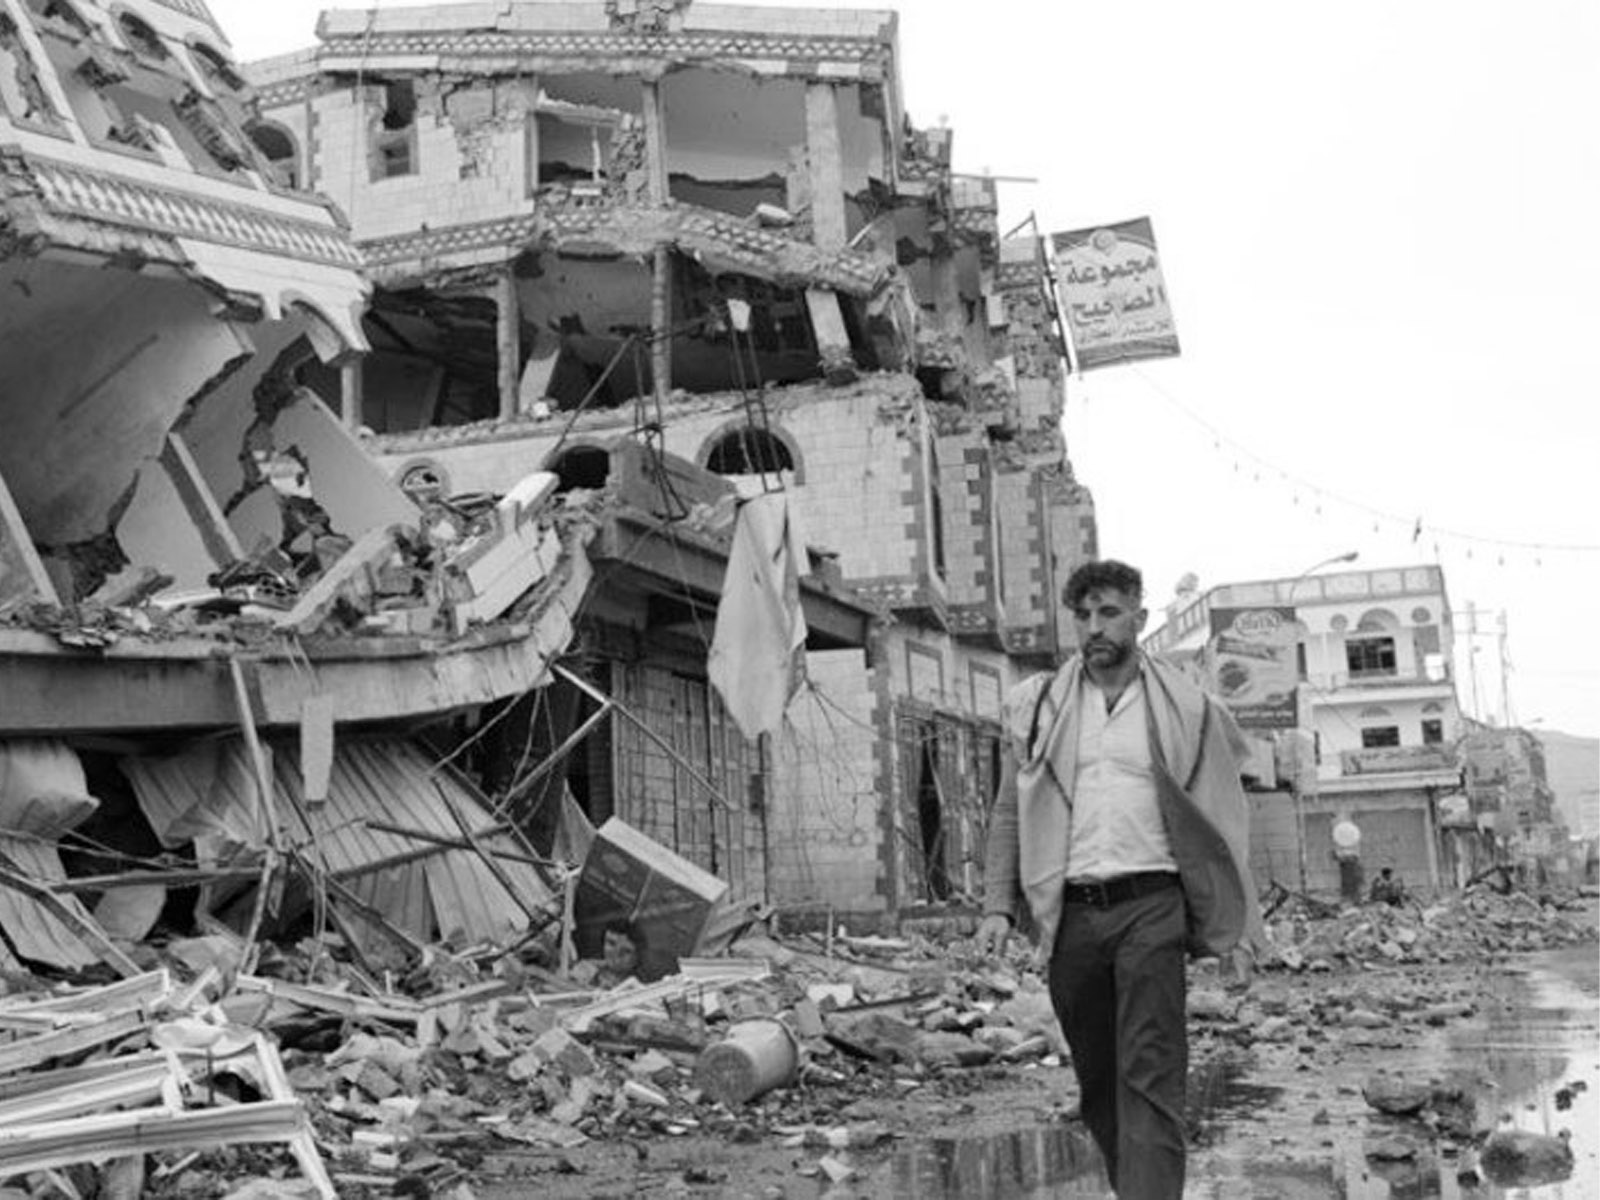 فشلت الحكومة اليمنية في احترام وحماية وإعمال حقوق الإنسان